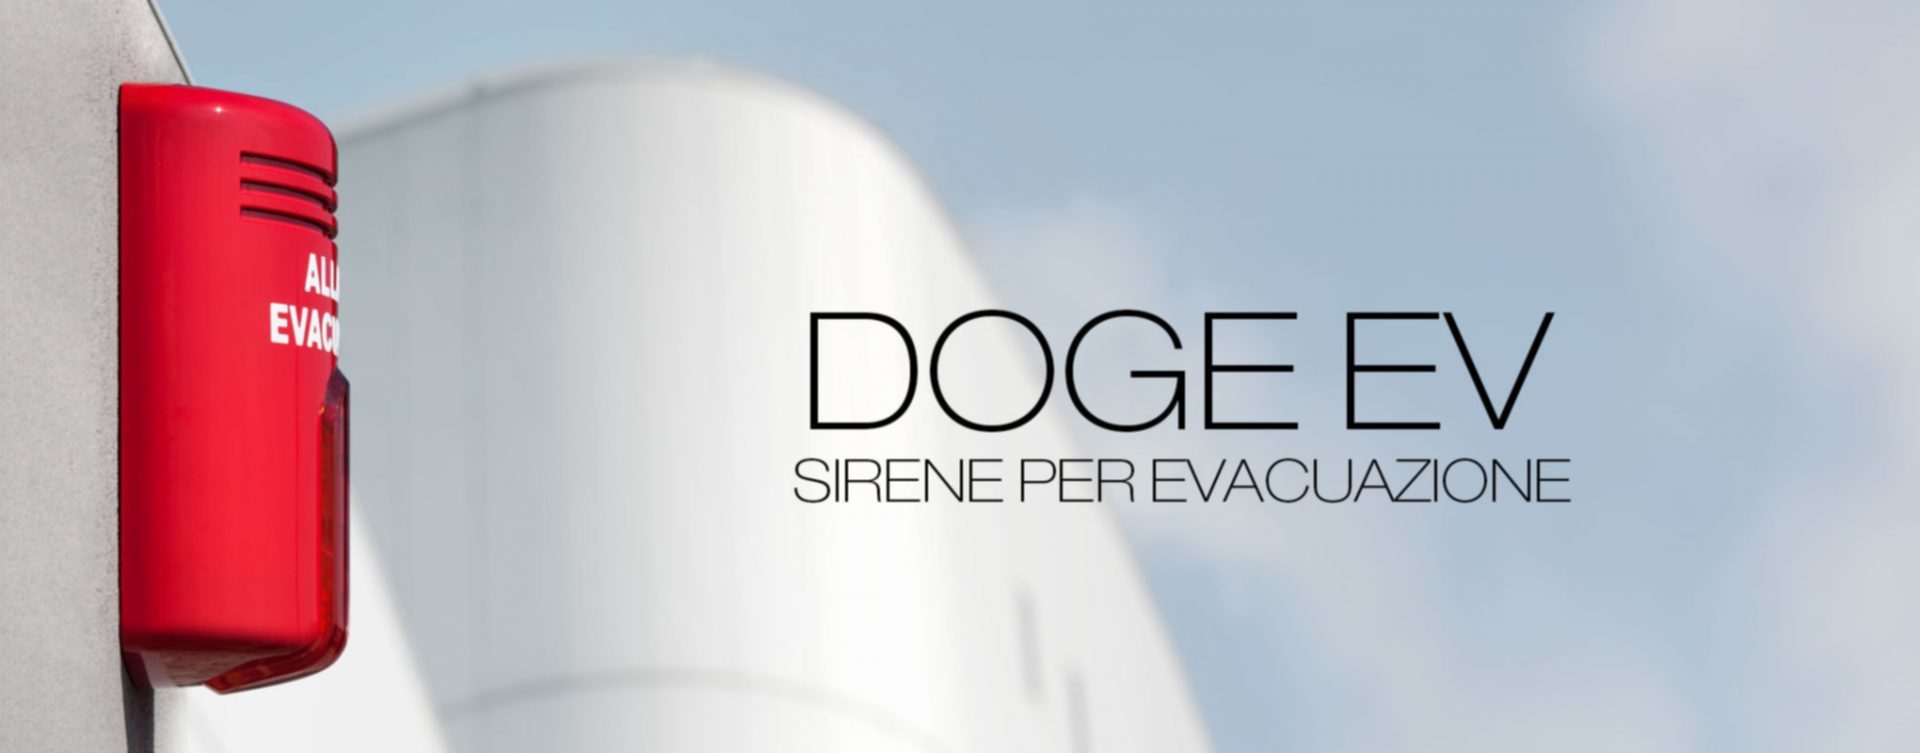 Doge EV | Le sirene antincendio ed evacuazione di Venitem